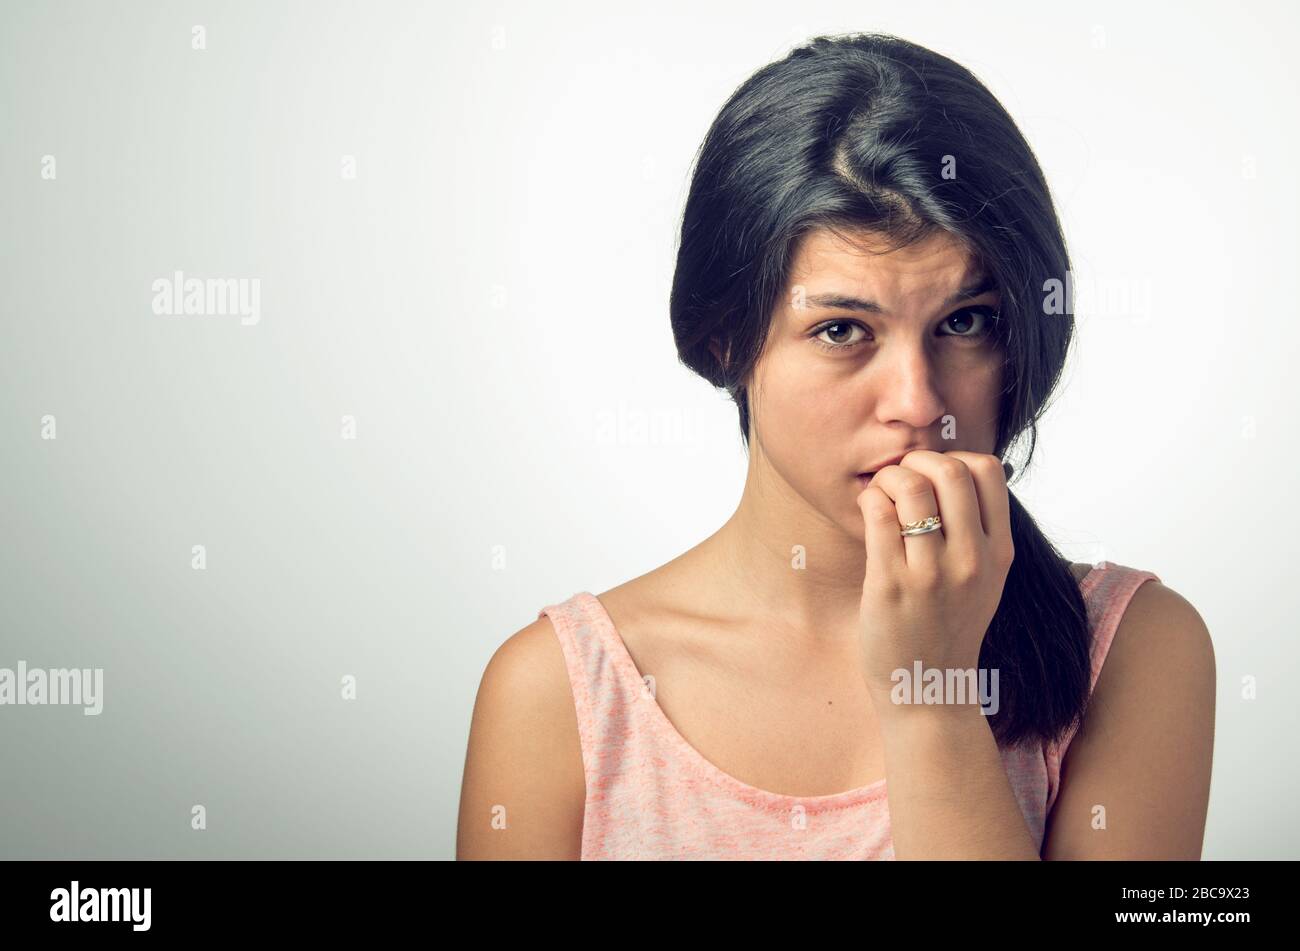 Porträt eines Teenagers Brünette Mädchen mit nervösen Ausdruck und Nagel-beißen Stockfoto